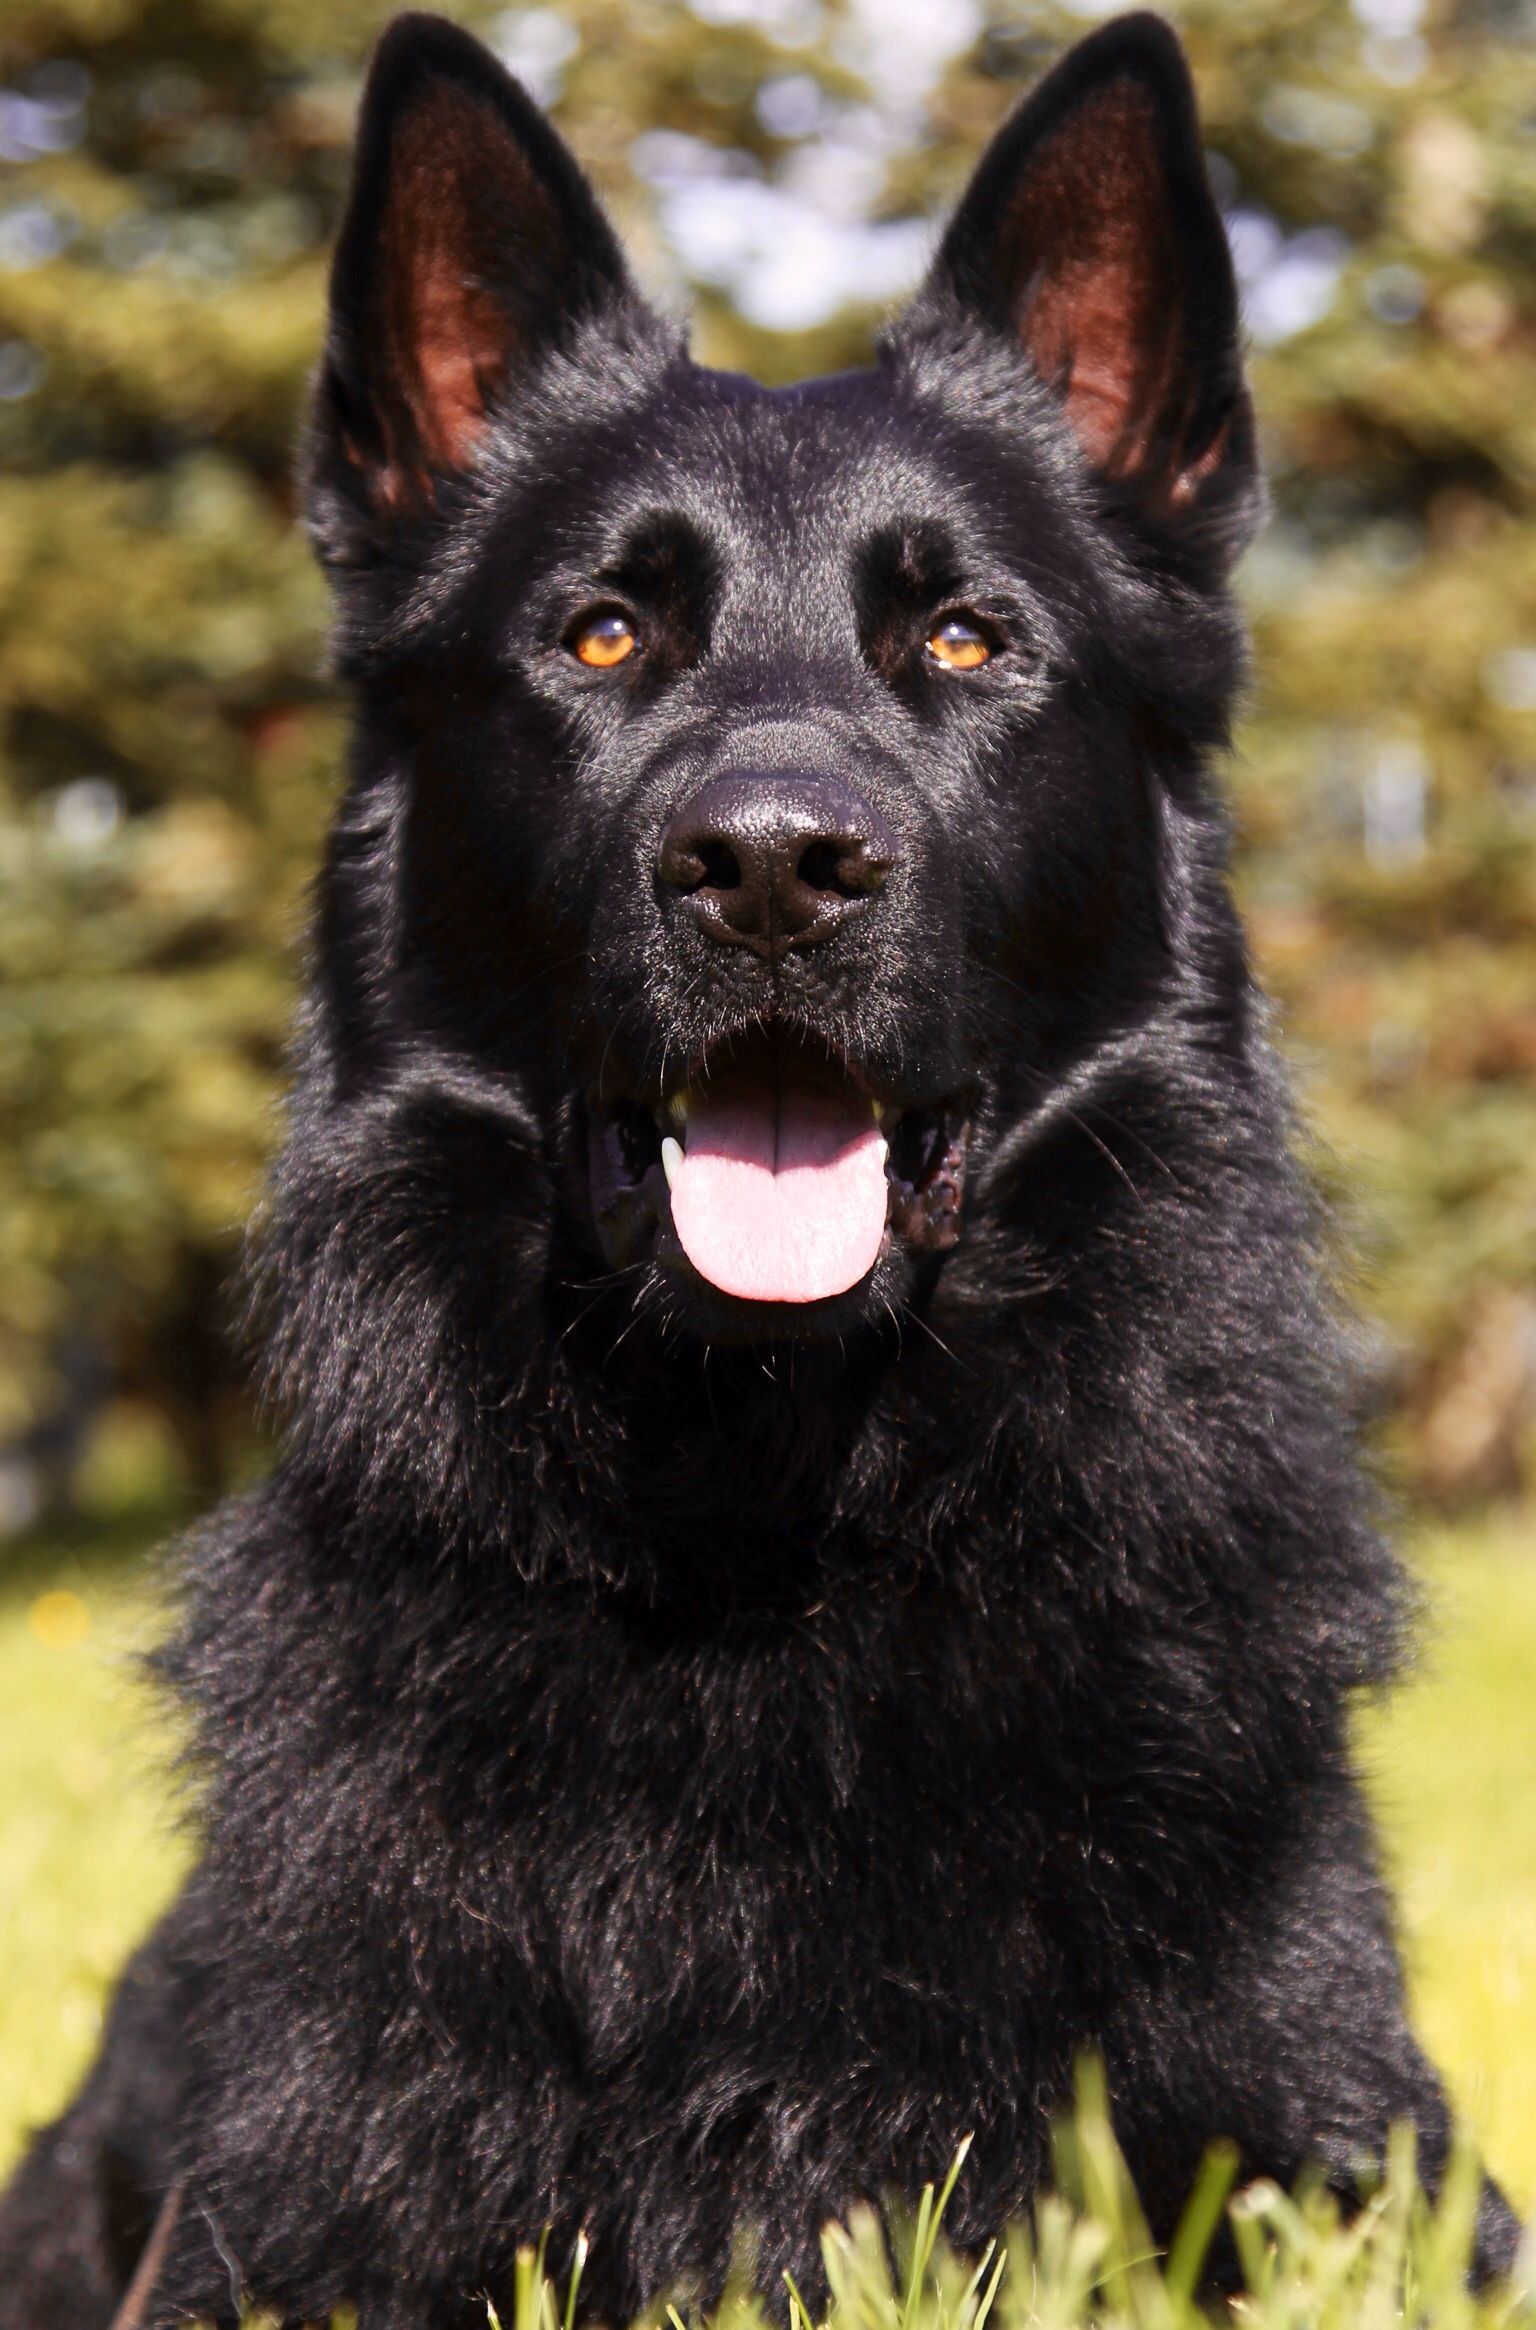 Best royal black German Shepherd image. German shepherd dogs